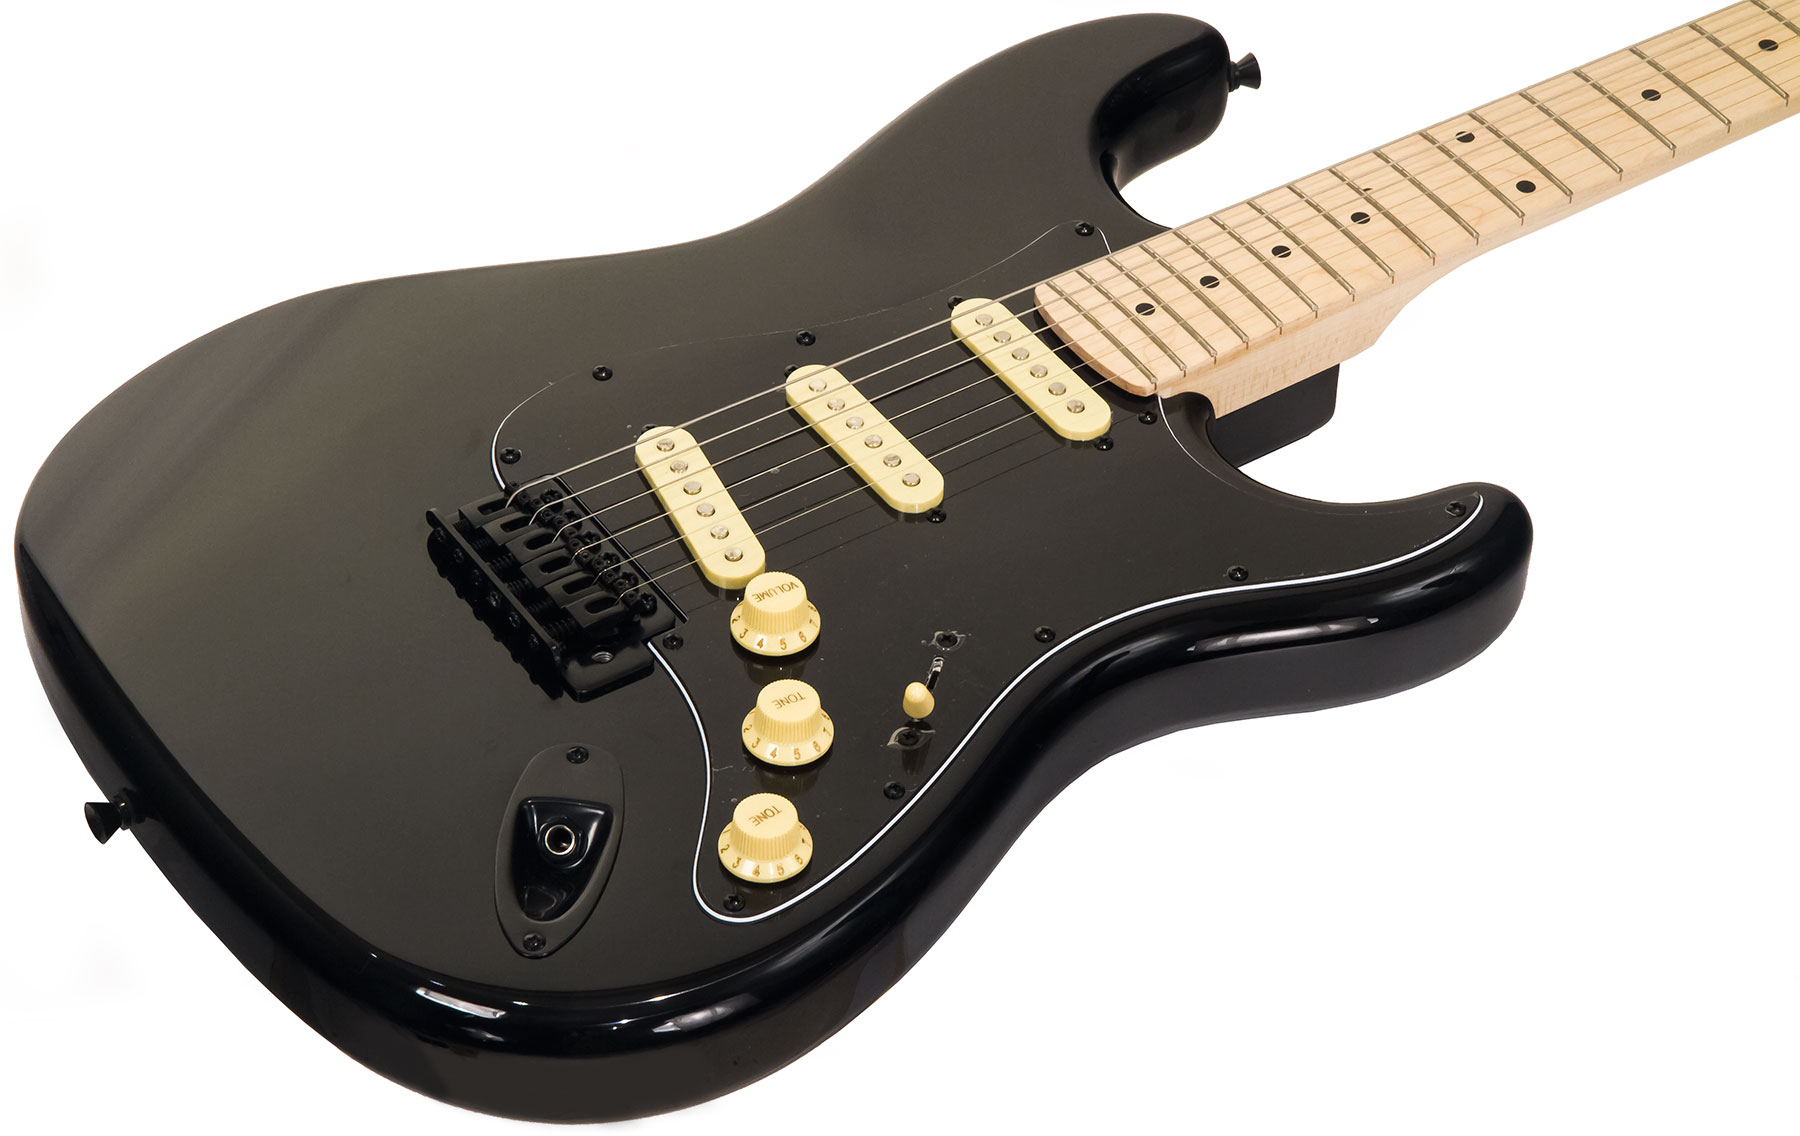 Eastone Str70 Gil Sss Trem Mn - Black - Guitarra eléctrica con forma de str. - Variation 1